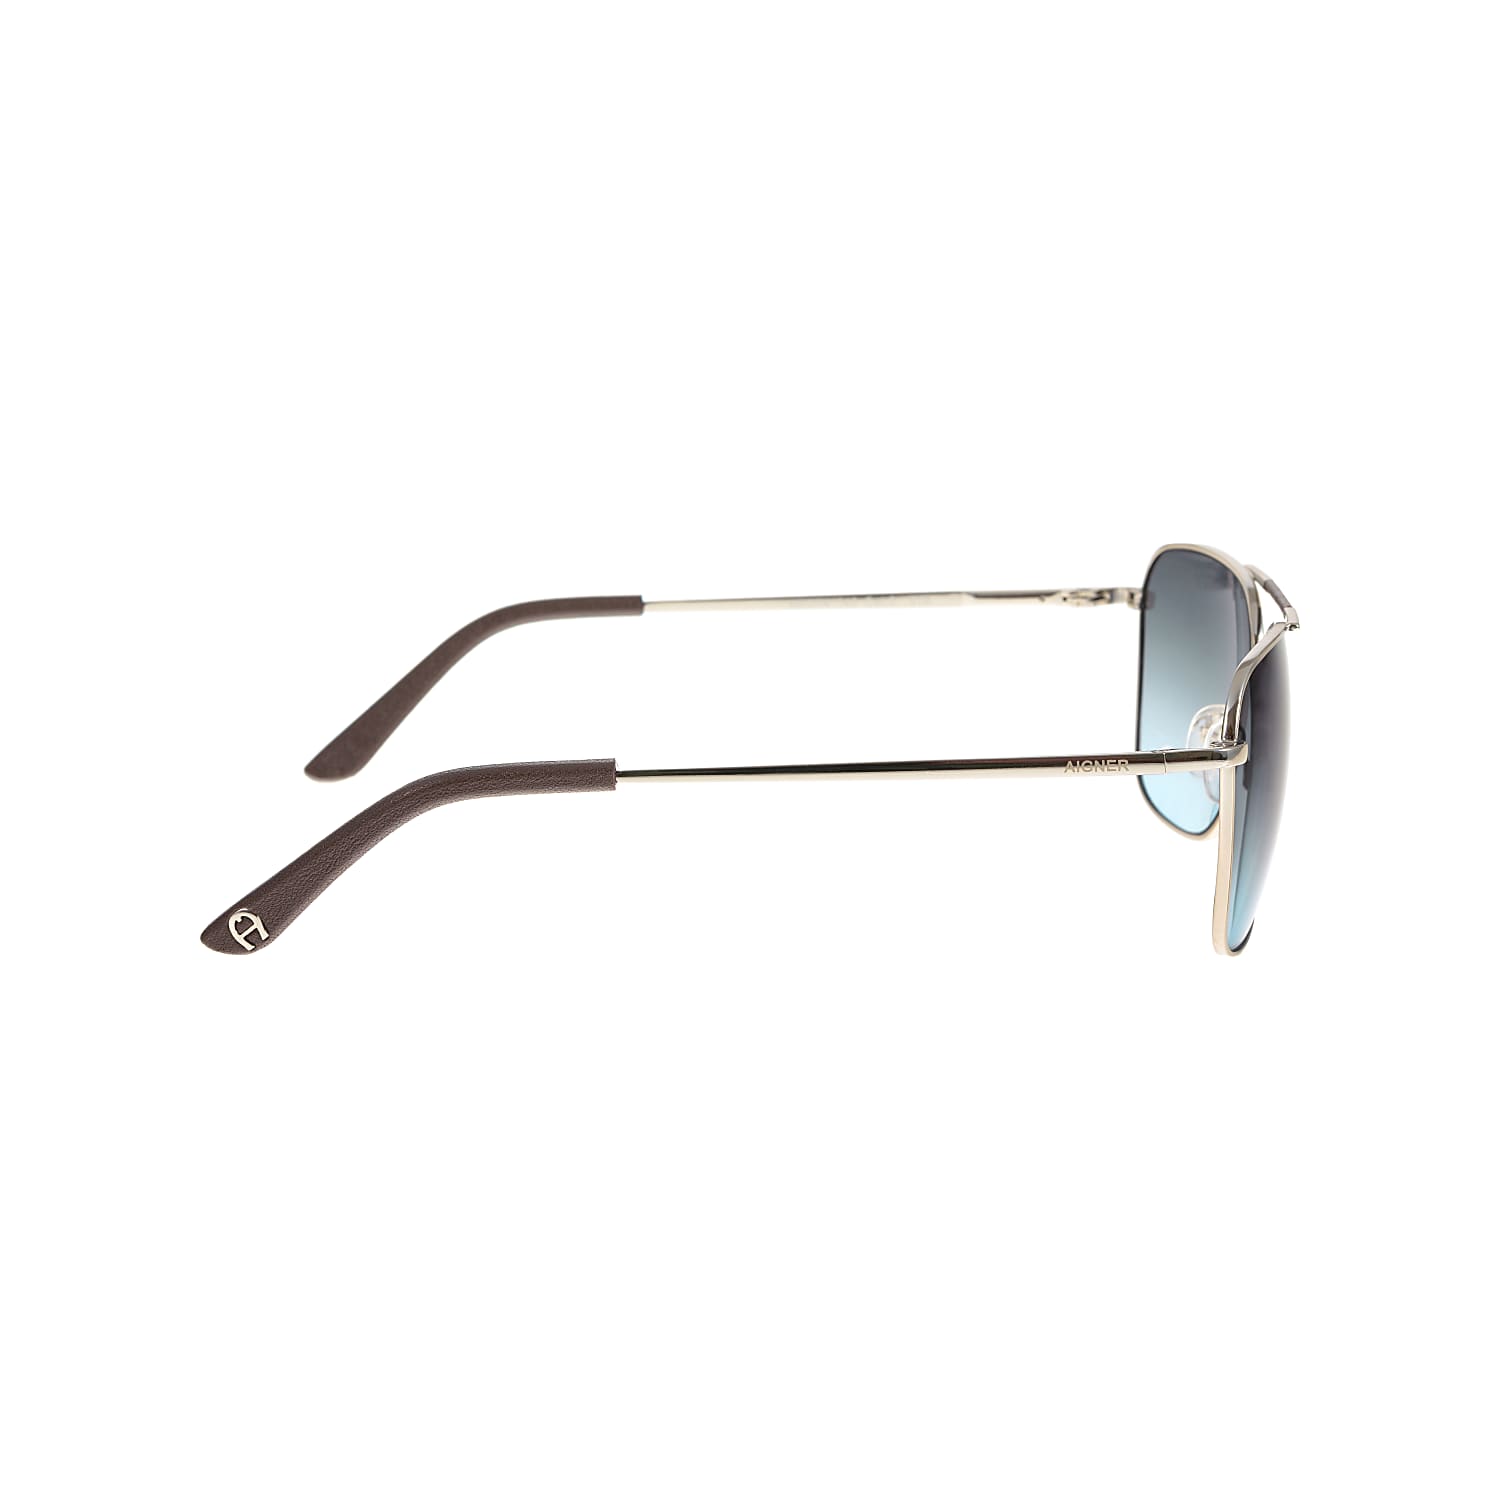 Sonnenbrille mit Rindlederapplikation